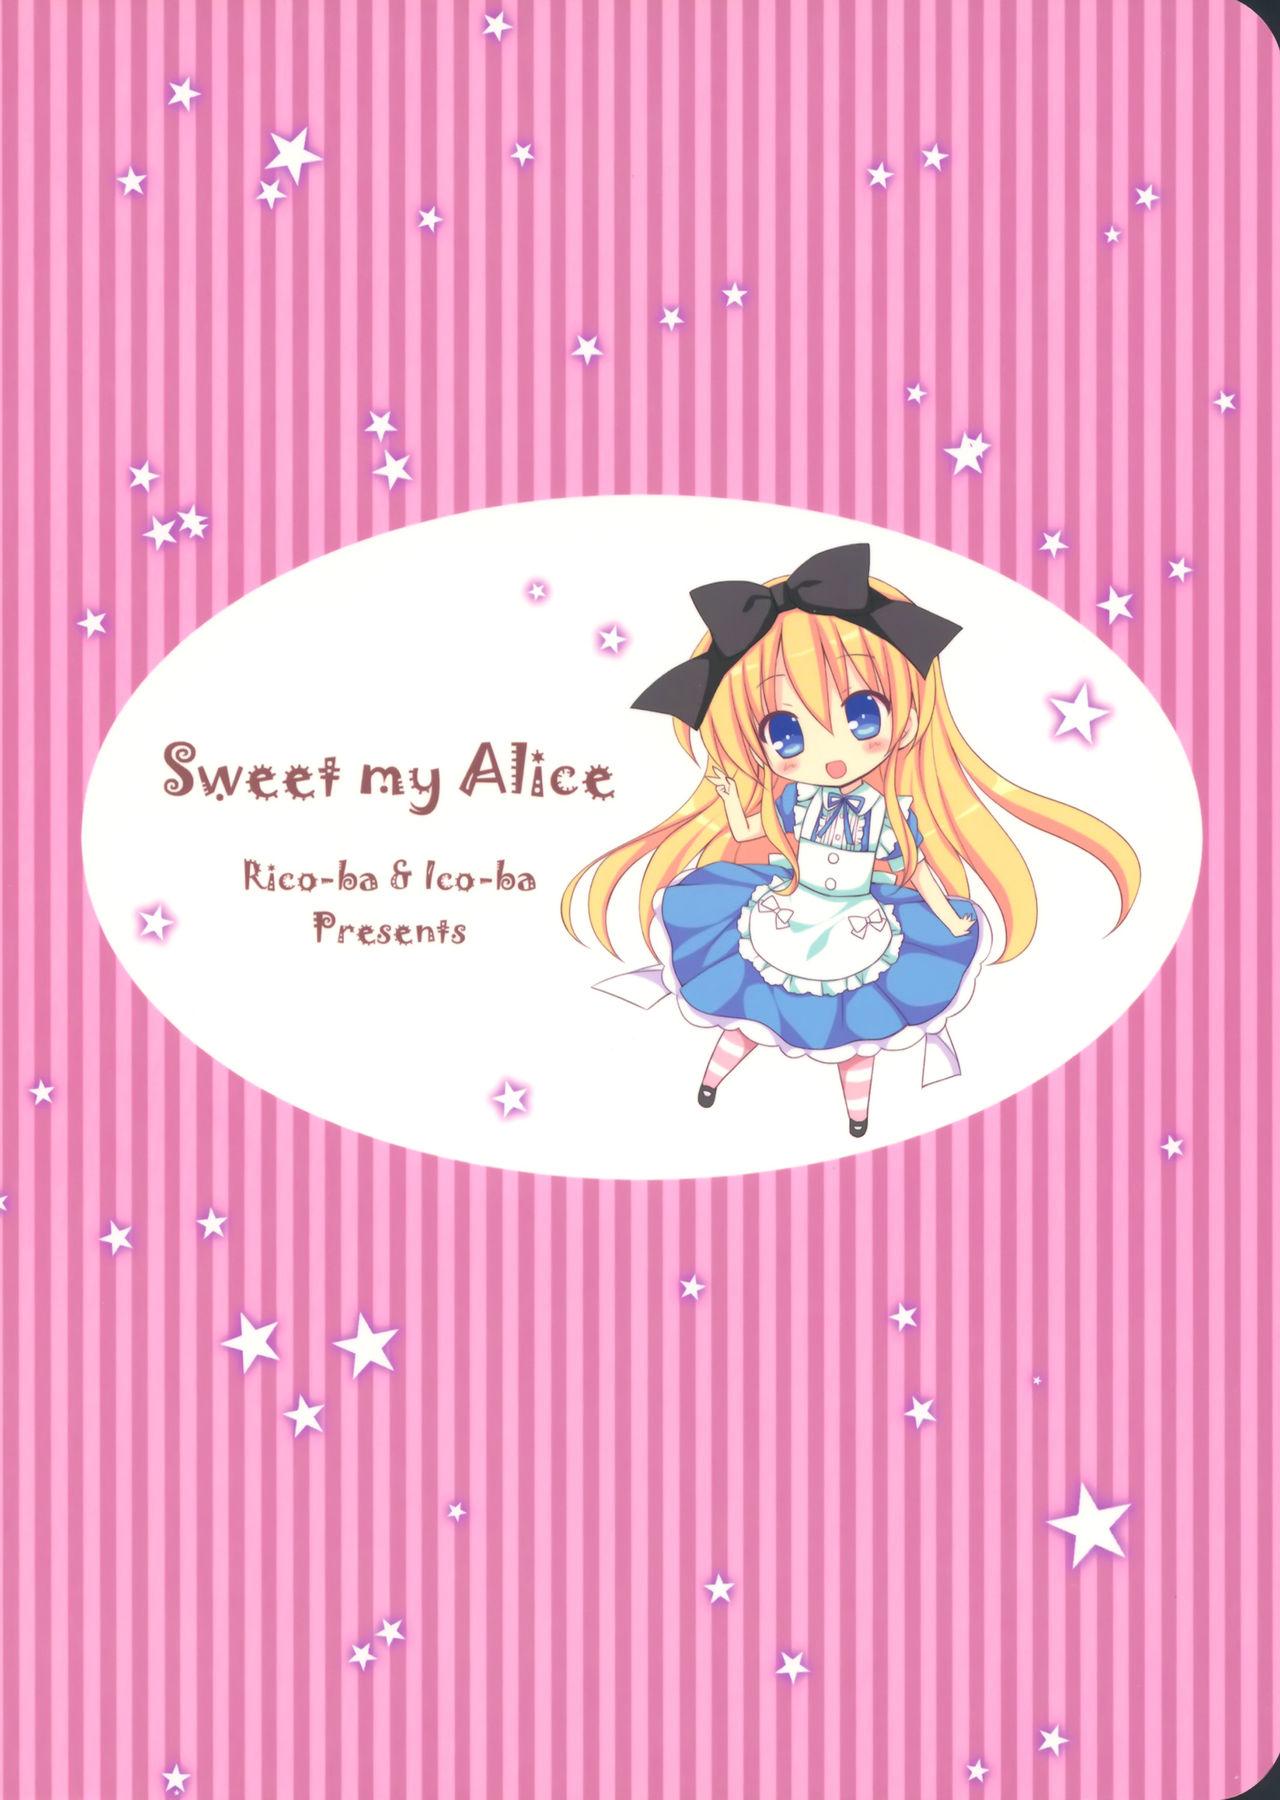 Sweet my Alice 20